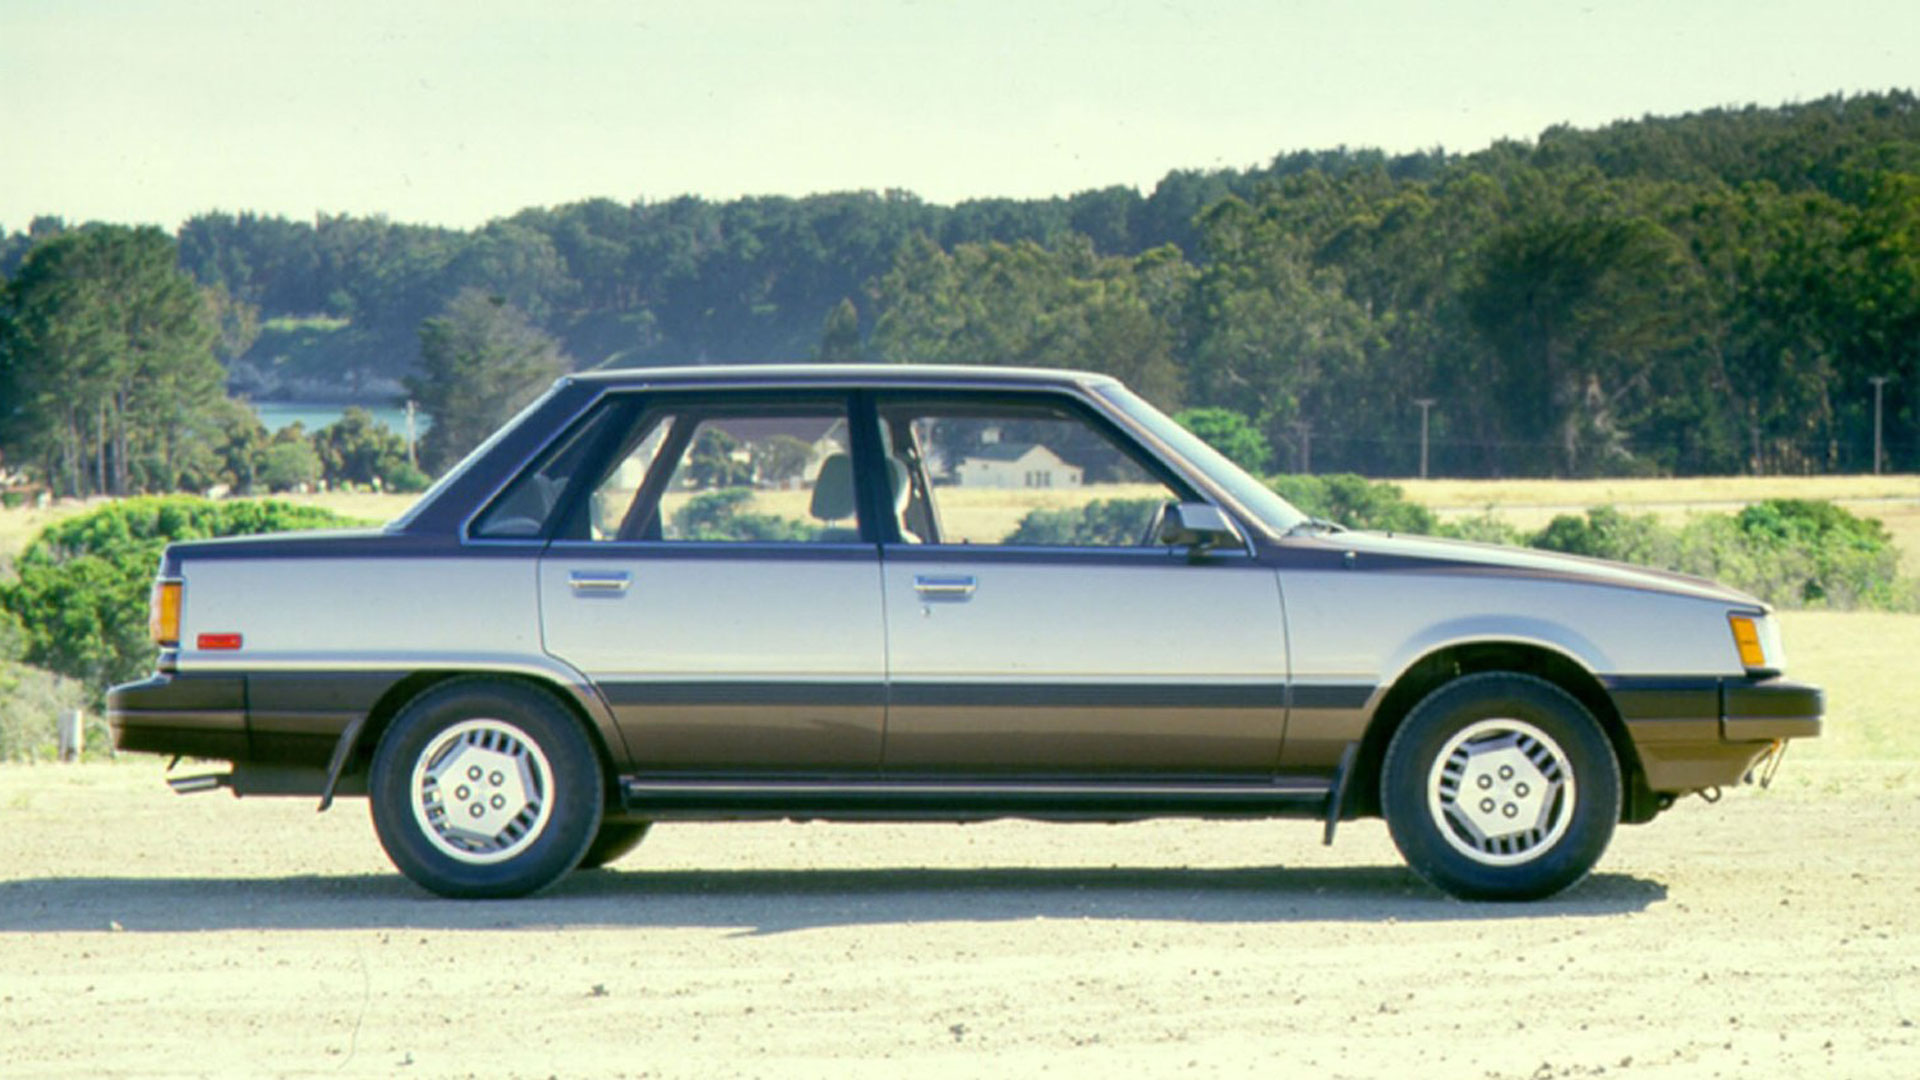 30 years of Lexus